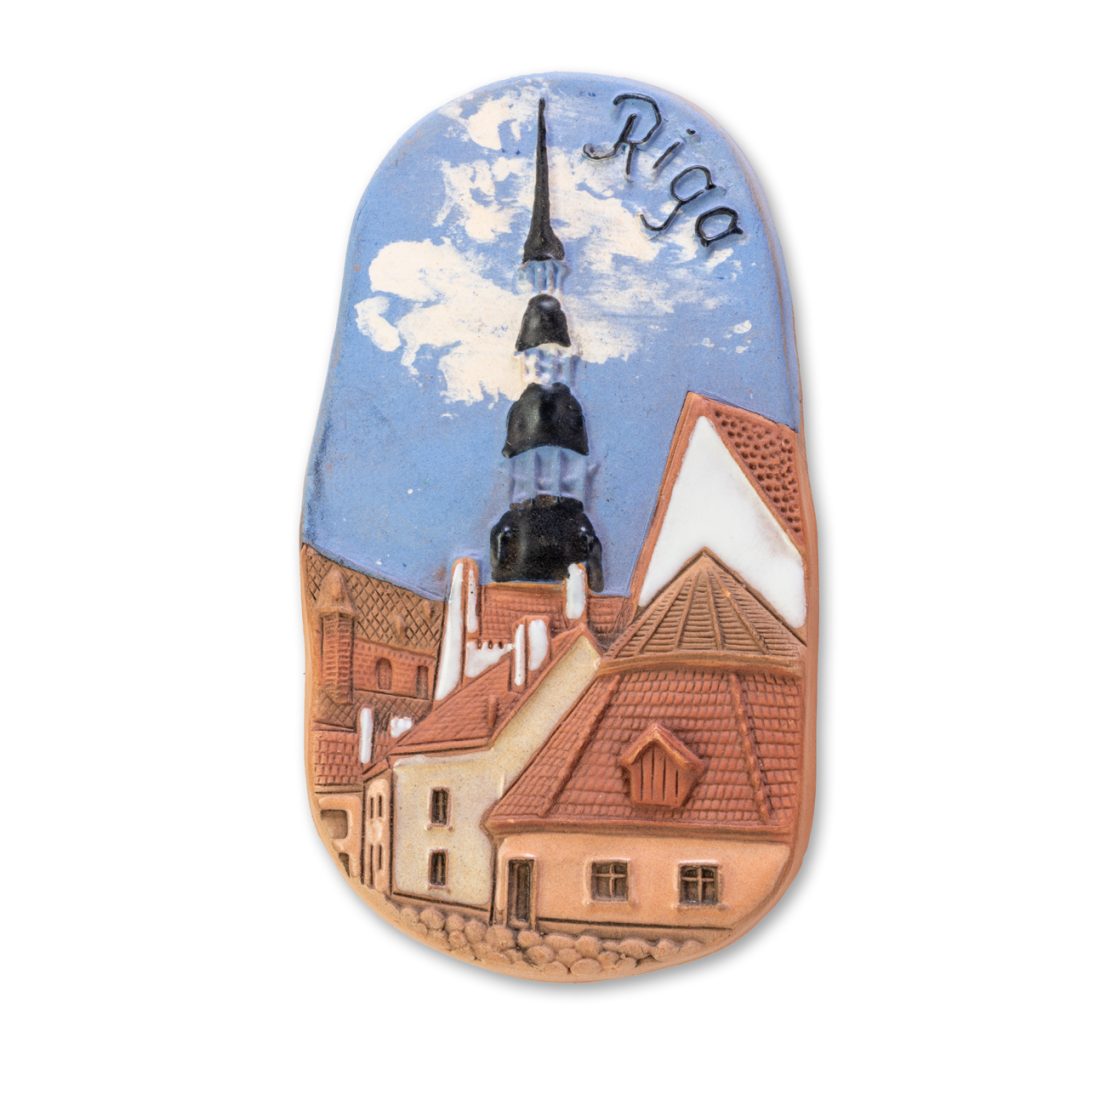 Ceramic magnet of St. Peter’s church in Riga M 03